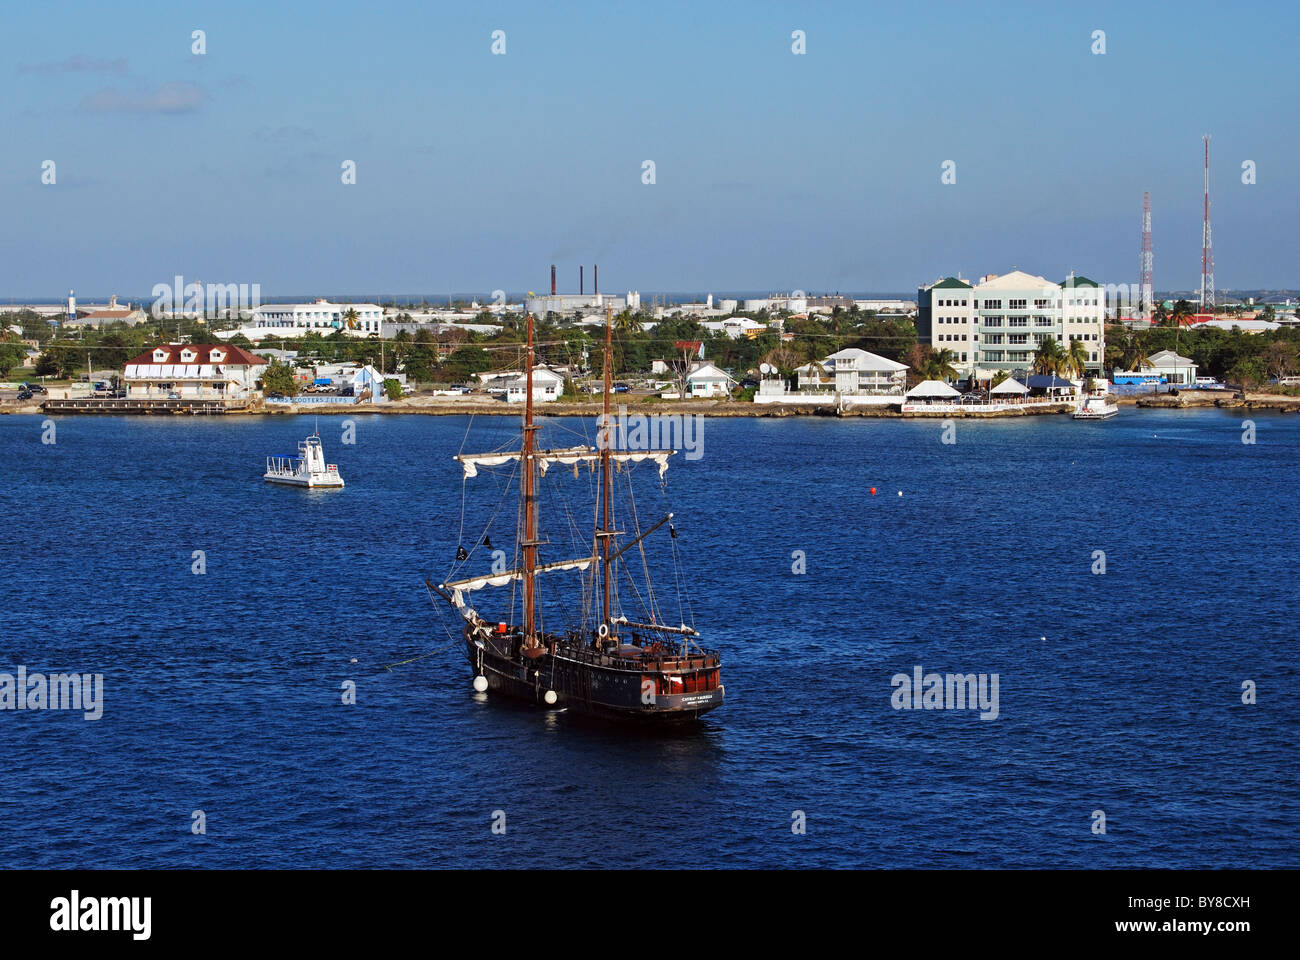 Mâts de bateau au mouillage dans la baie, George Town, Grand Cayman, Cayman Islands, Caribbean. Banque D'Images